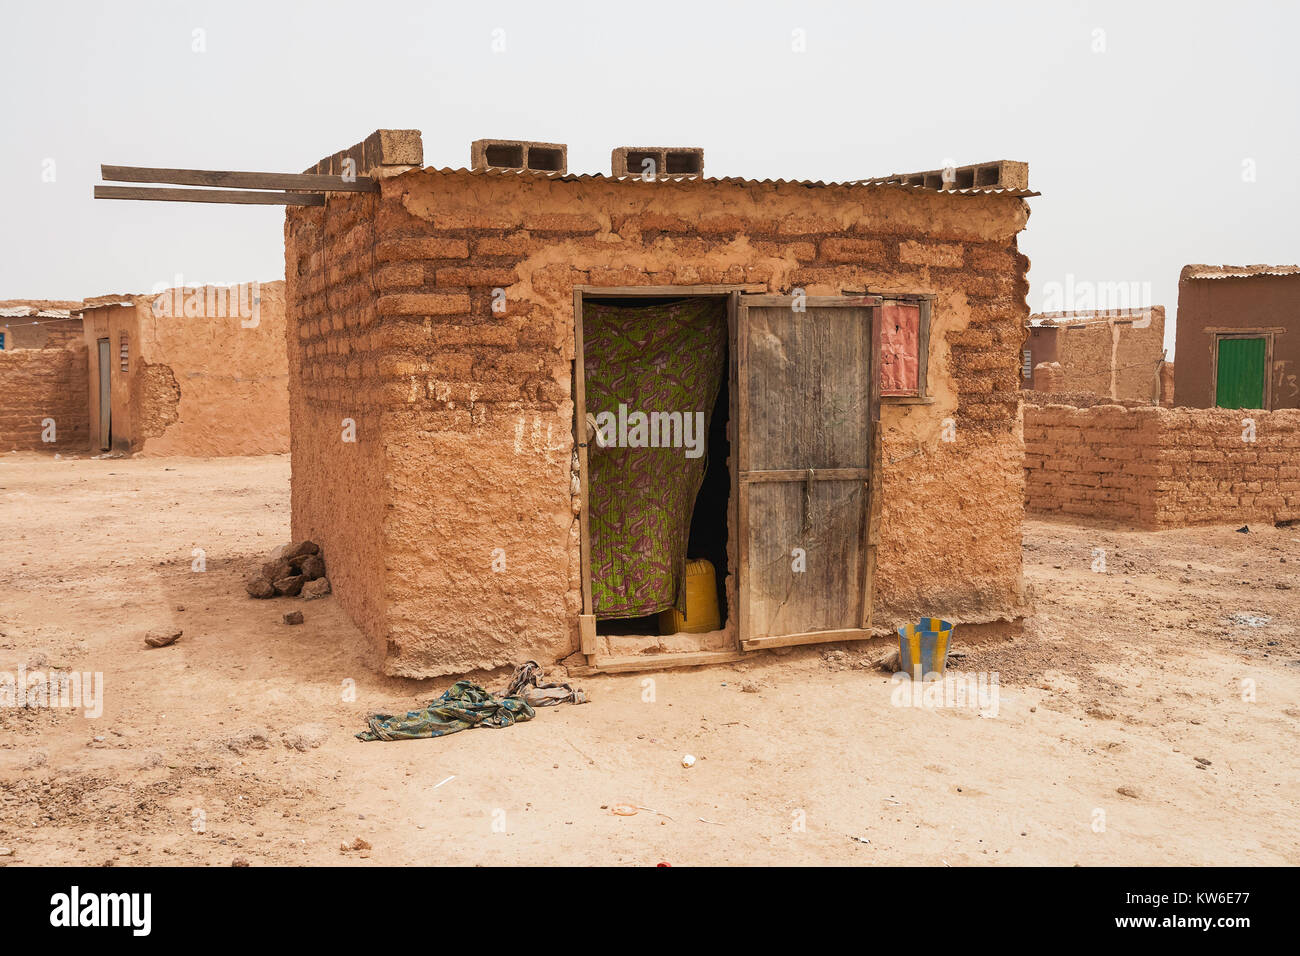 Maison typique dans les bidonvilles ot canton sans électricité ni eau courante, banlieue de Ouagadougou, Burkina Faso, Afrique de l'Ouest. Banque D'Images